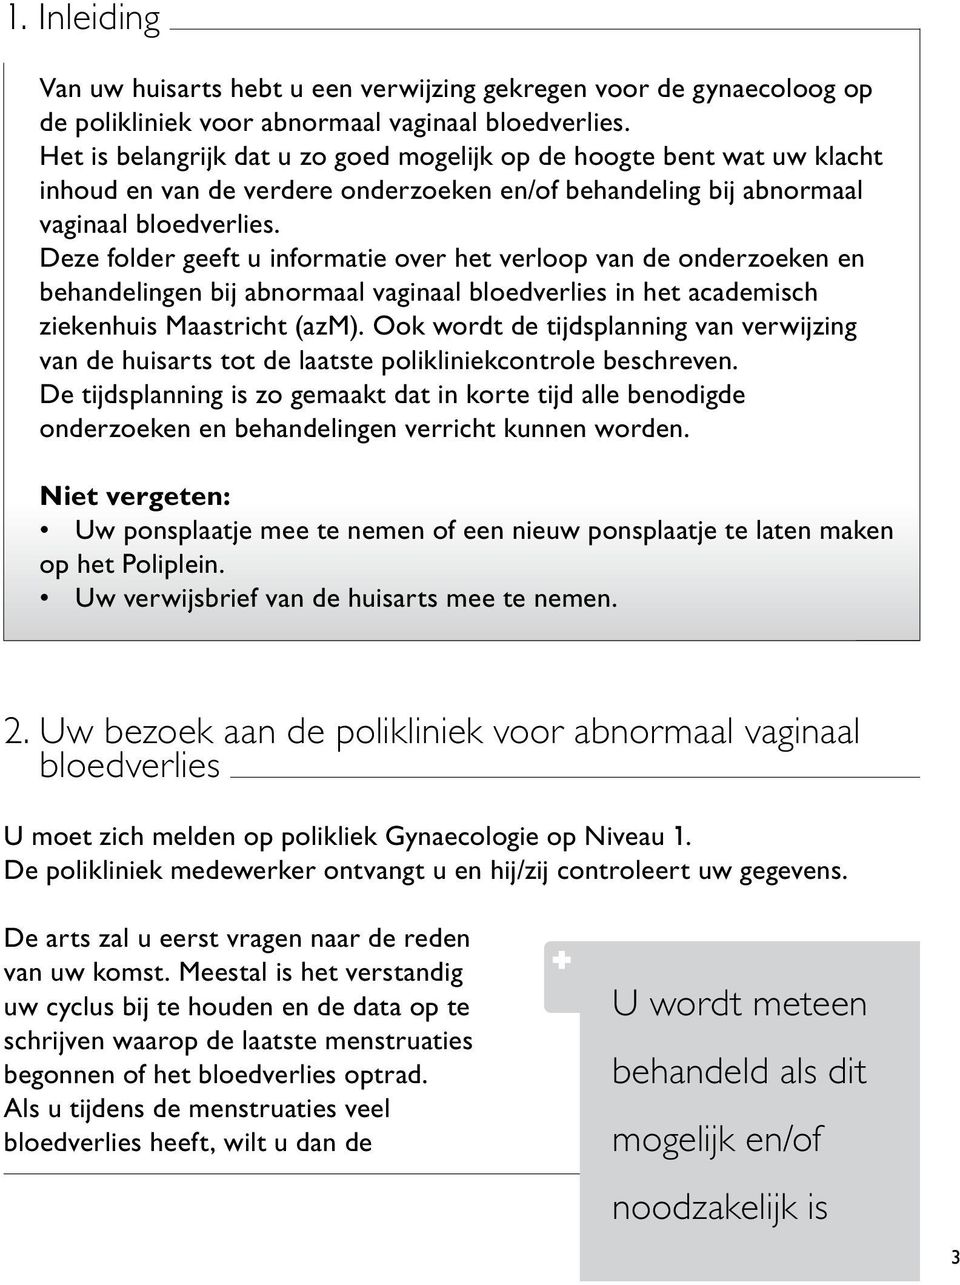 Deze folder geeft u informatie over het verloop van de onderzoeken en behandelingen bij abnormaal vaginaal bloedverlies in het academisch ziekenhuis Maastricht (azm).